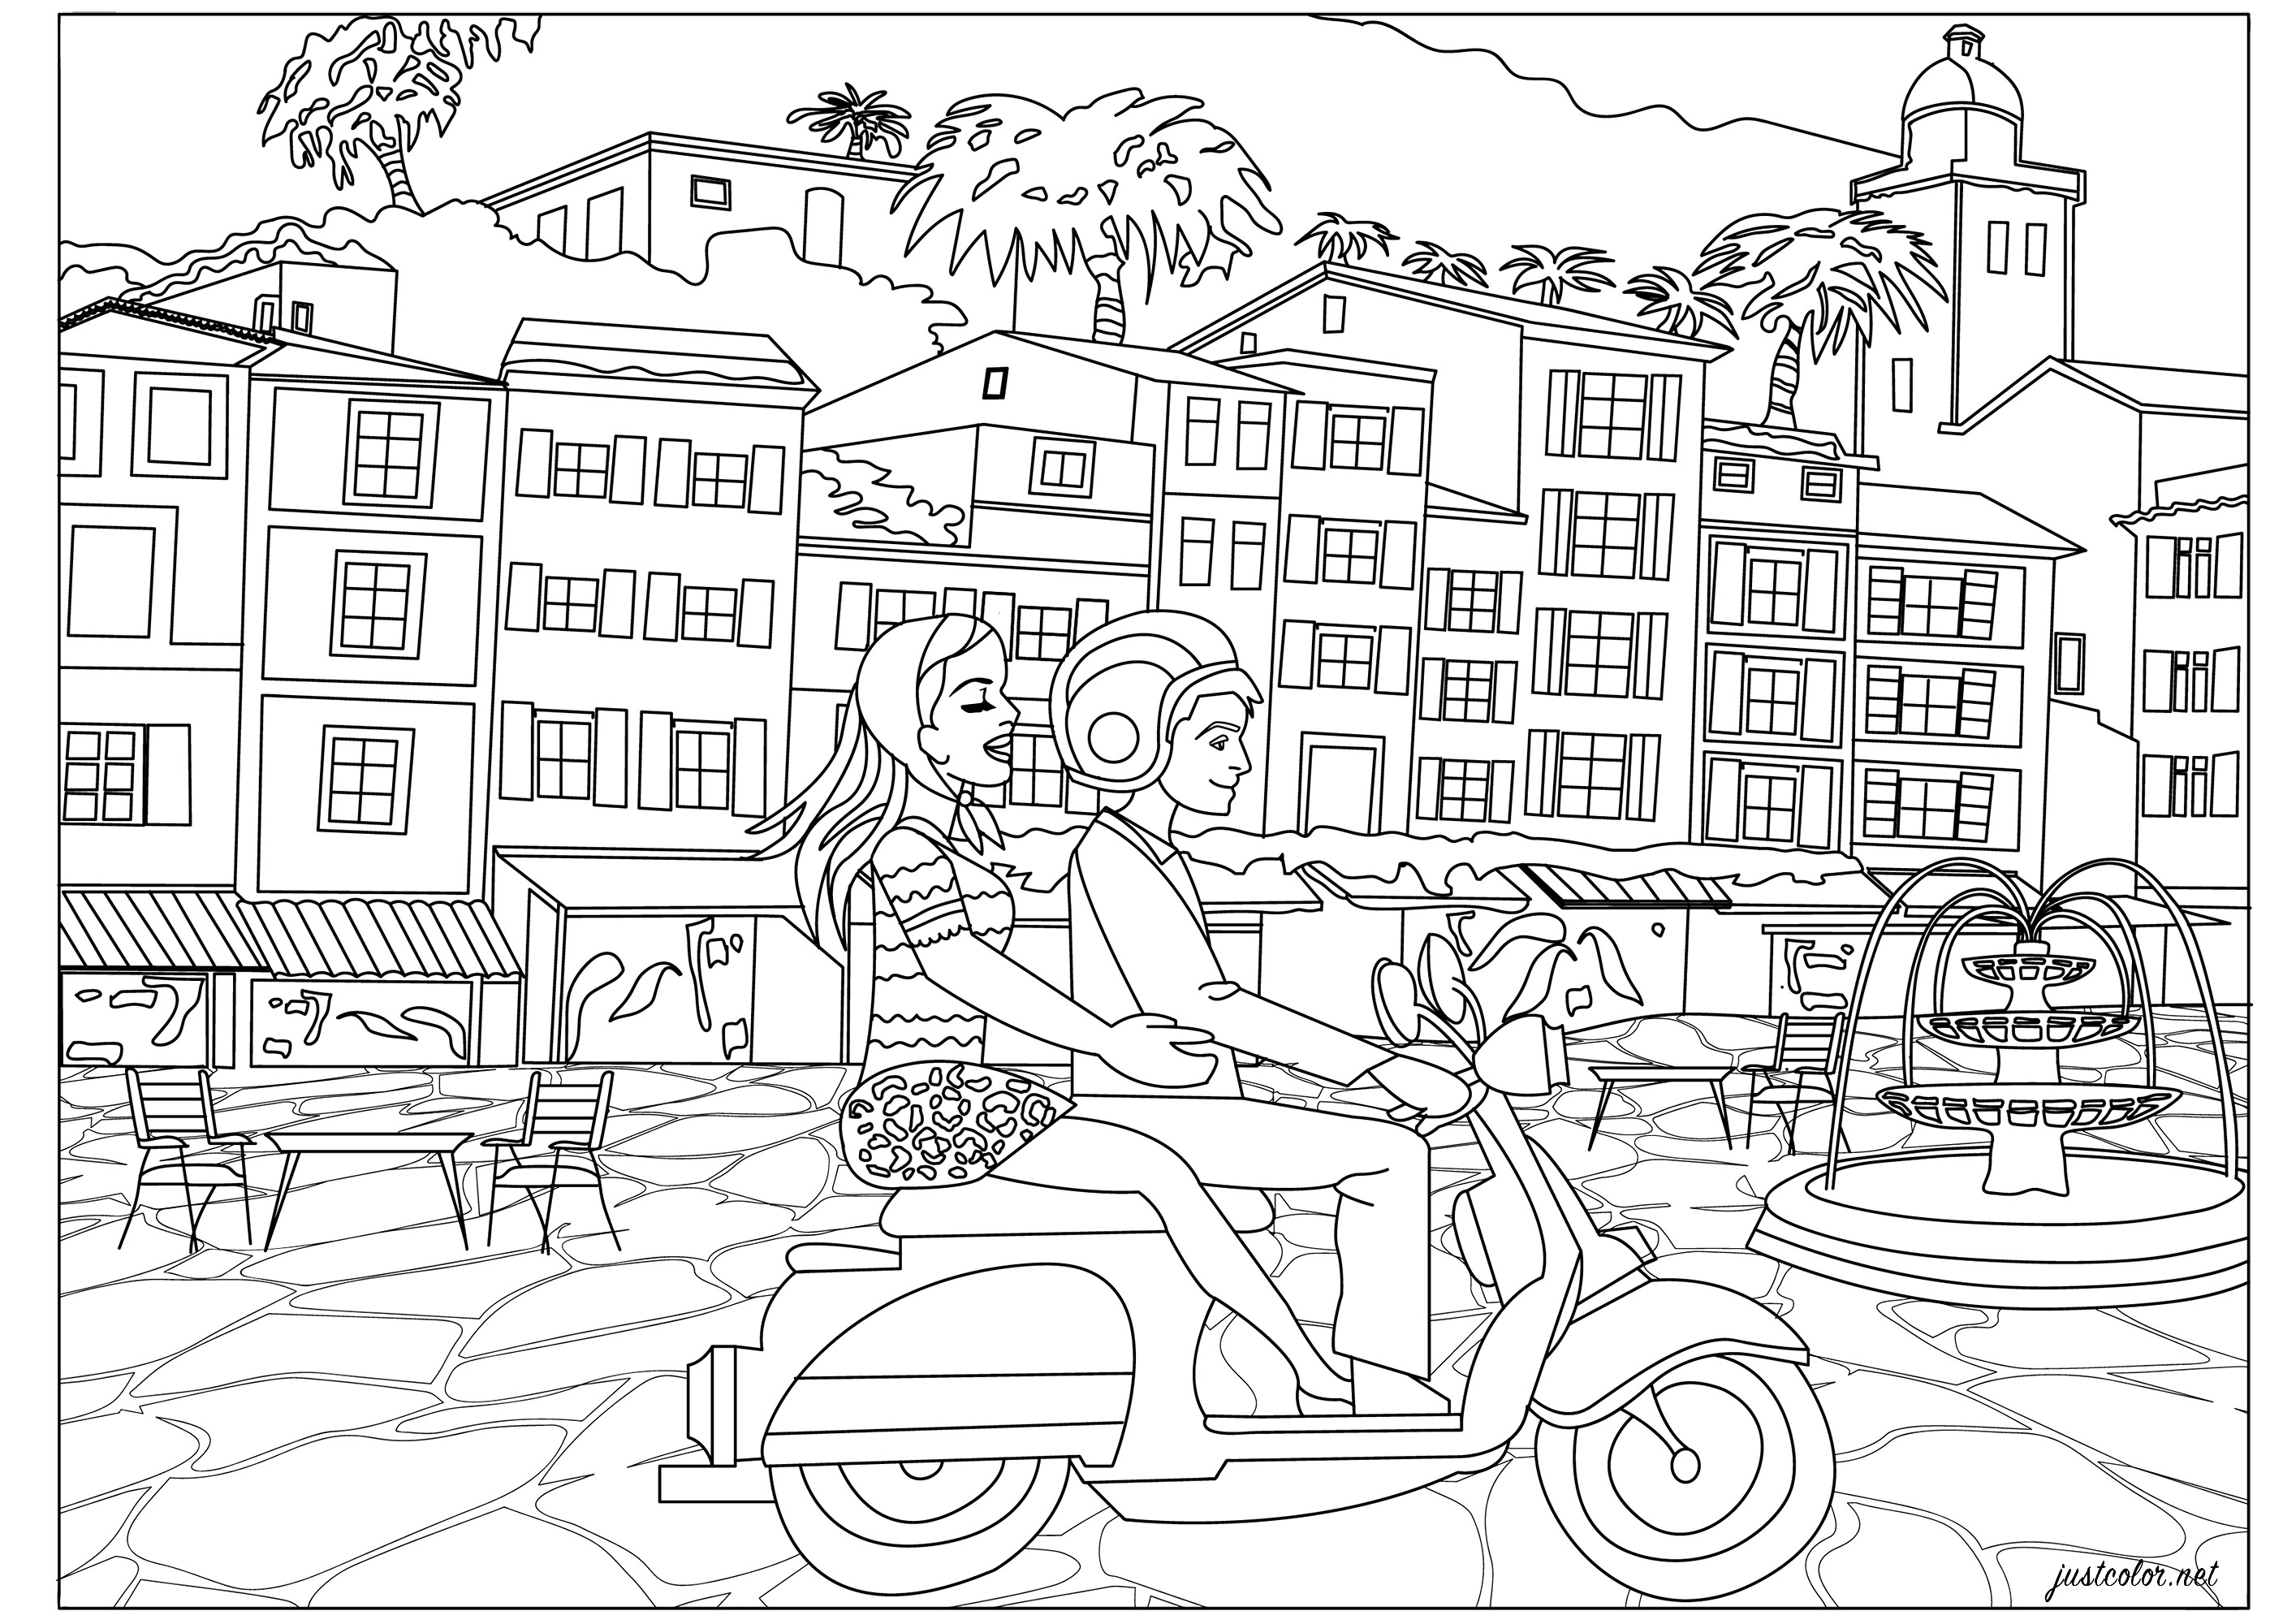 Vacaciones italianas para esta joven pareja en su vespa scooter. Pasee por la costa atravesando bonitos pueblos... Colorear estas casas típicas italianas, la fuente de la plaza, el scooter y recrear la atmósfera 'dolce vita'.